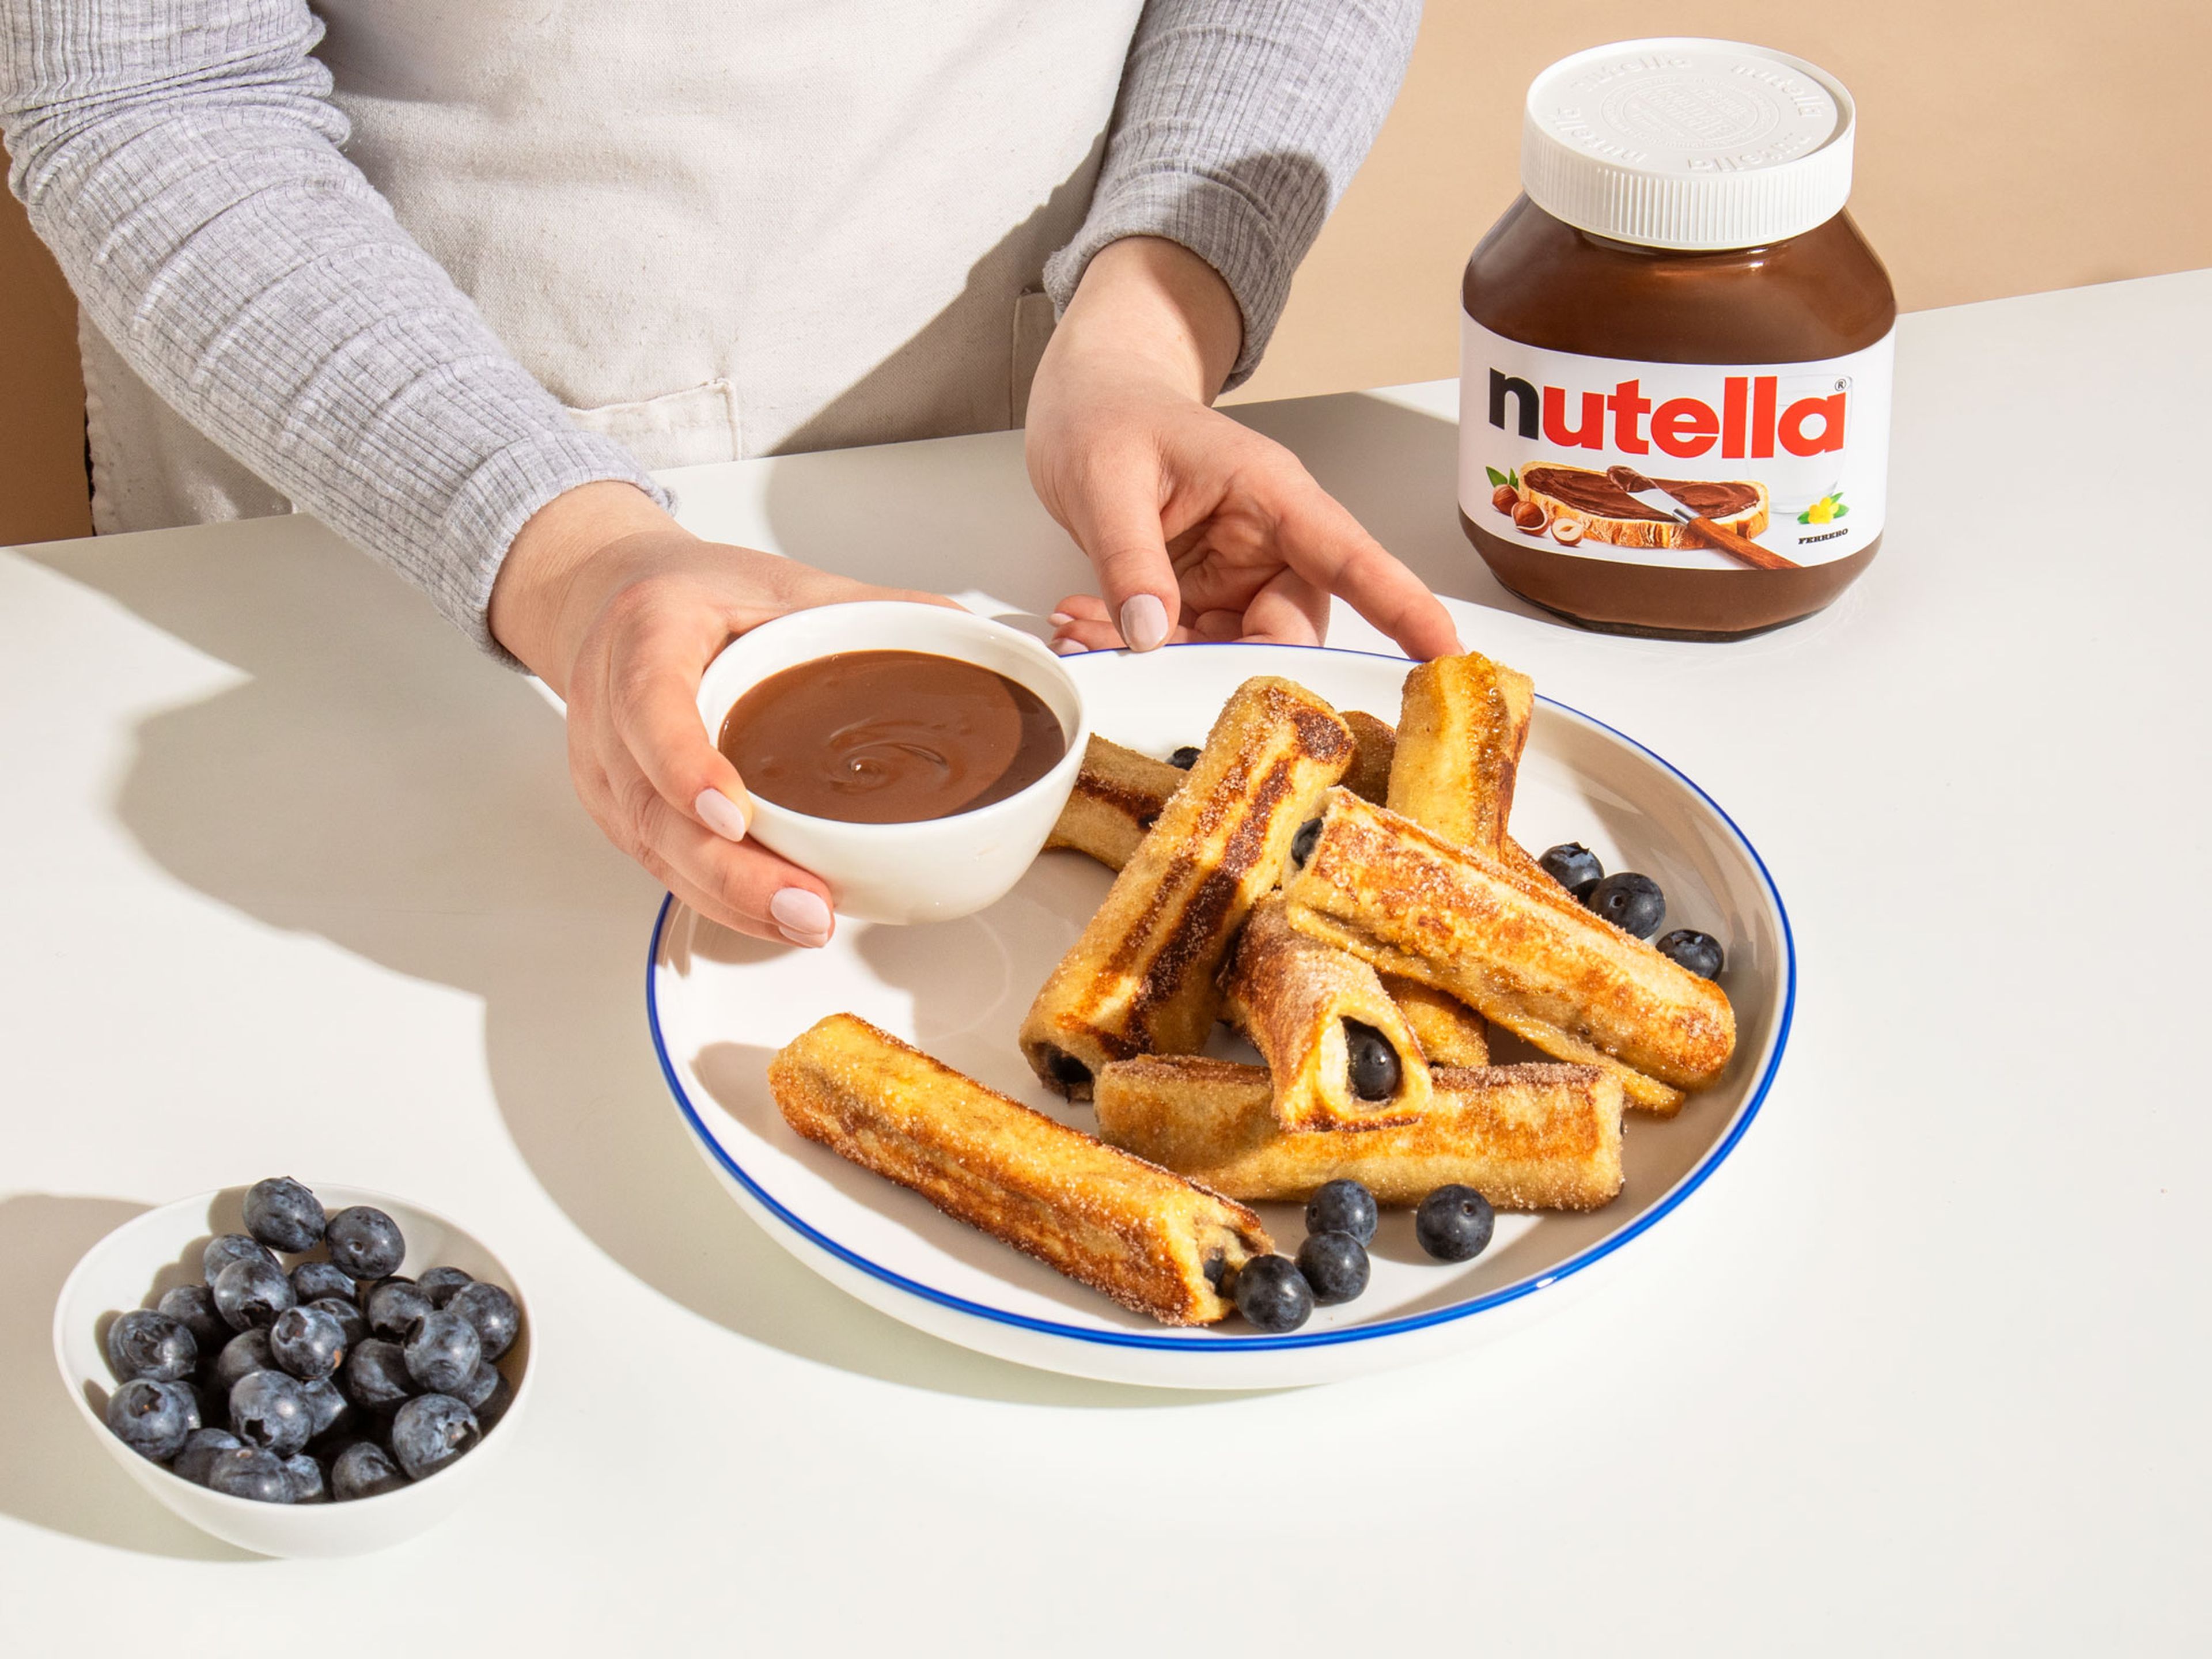 Die French Toast-Rolls mit nutella® garnieren oder in nutella® dippen. Guten Appetit!